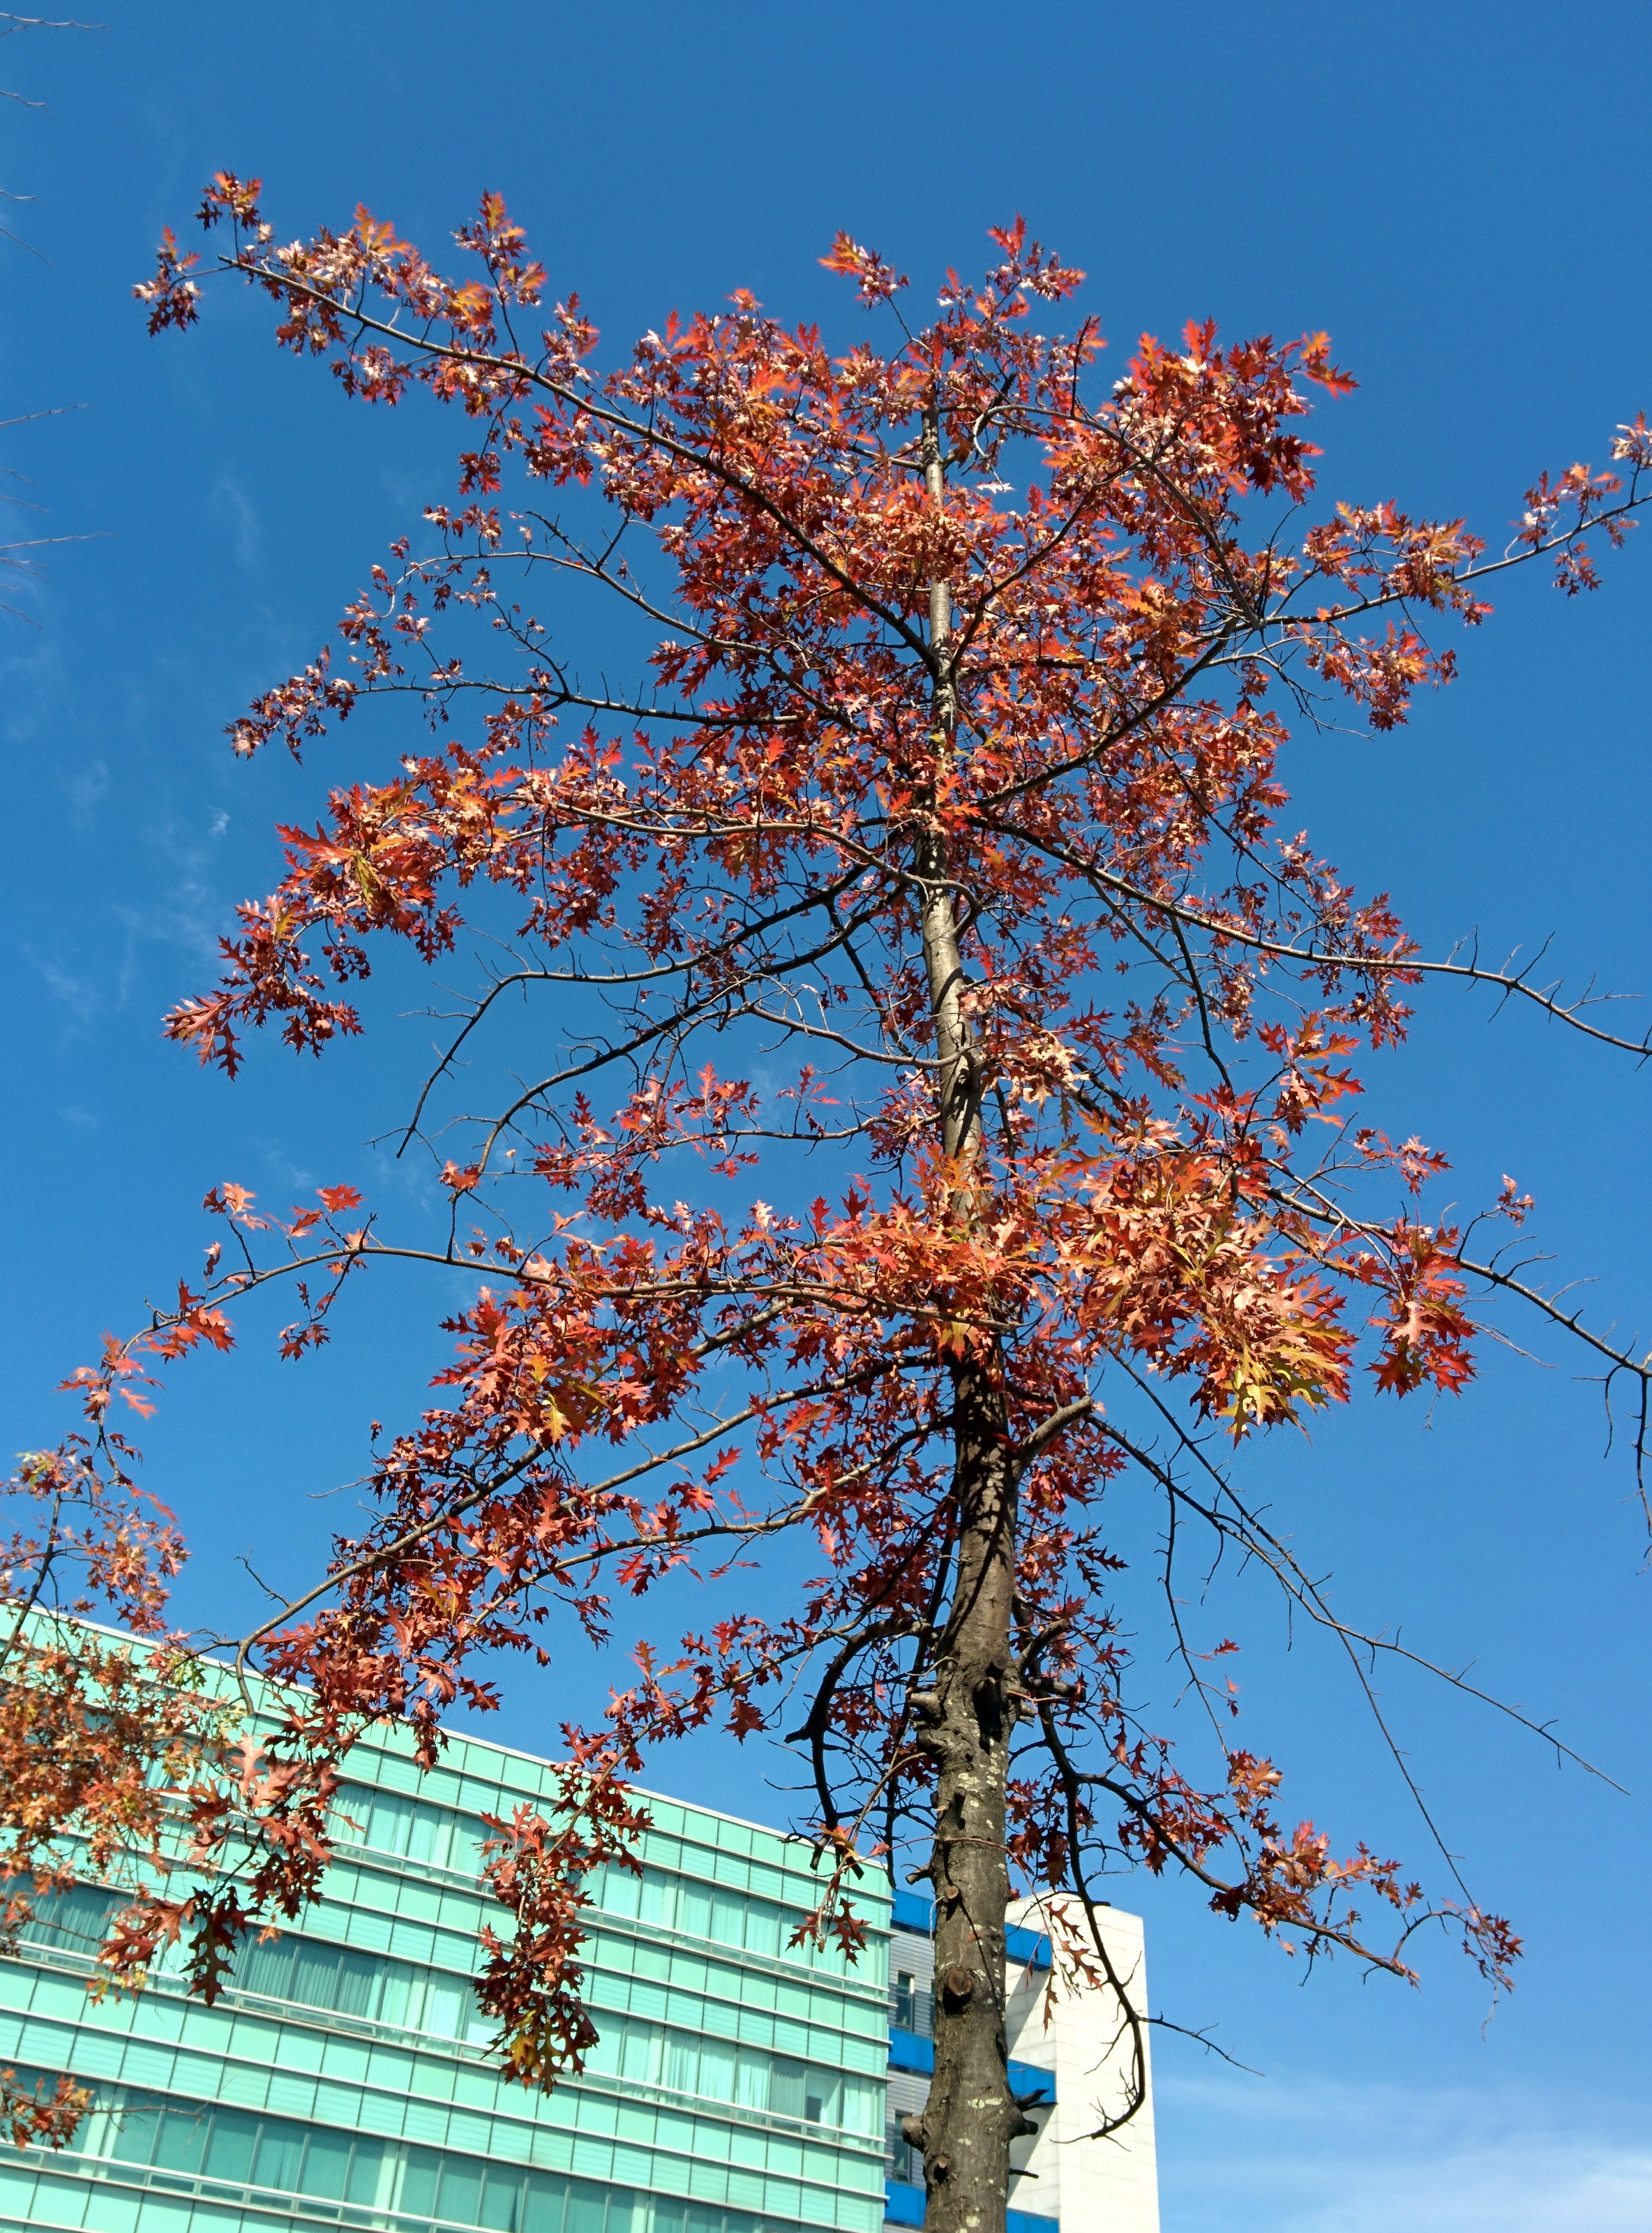 IMG_20151026_121649.jpg 붉게 단풍이 든 가로수의 큰 톱니 이파리 -- 대왕참나무